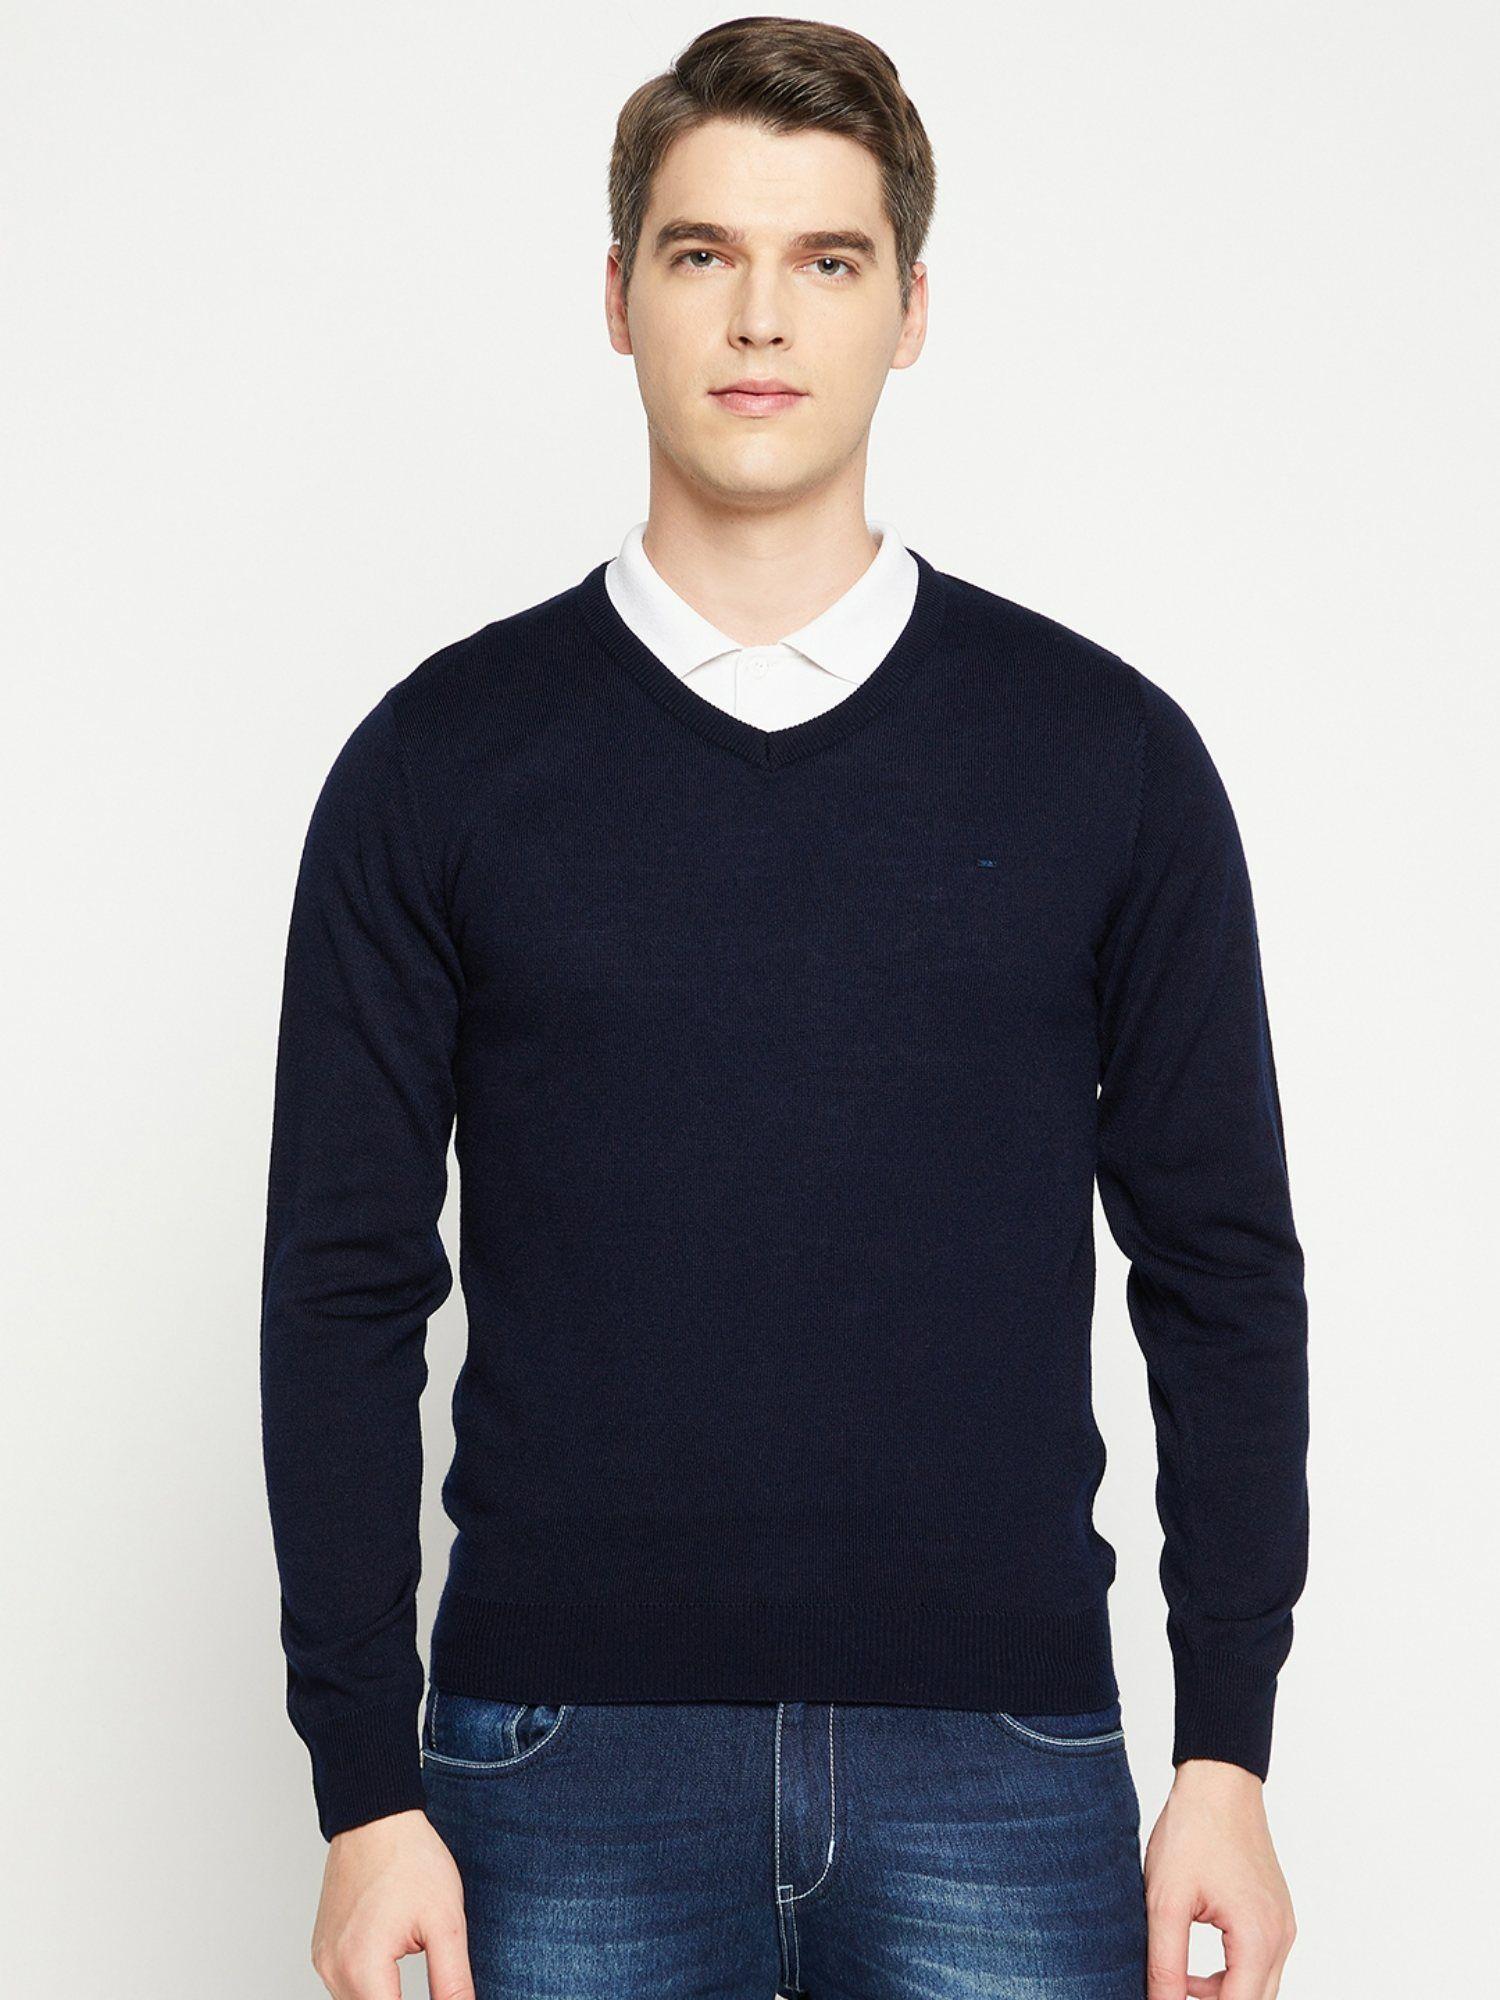 men-navy-blue-solid-acrylic-vee-neck-sweater